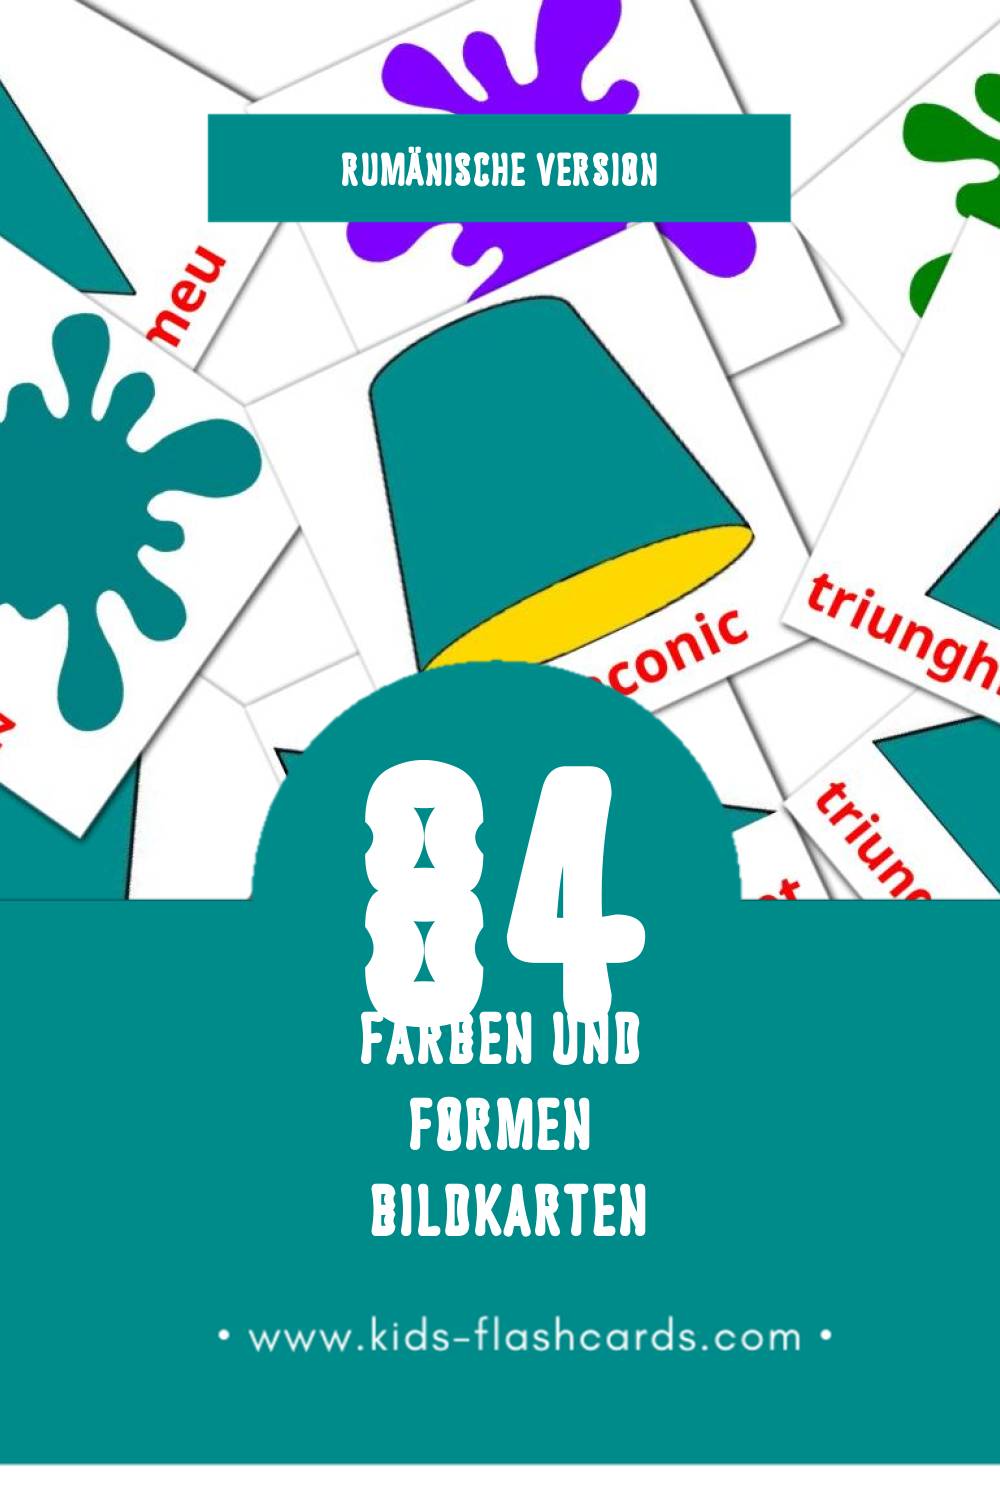 Visual culori și forme Flashcards für Kleinkinder (64 Karten in Rumänisch)